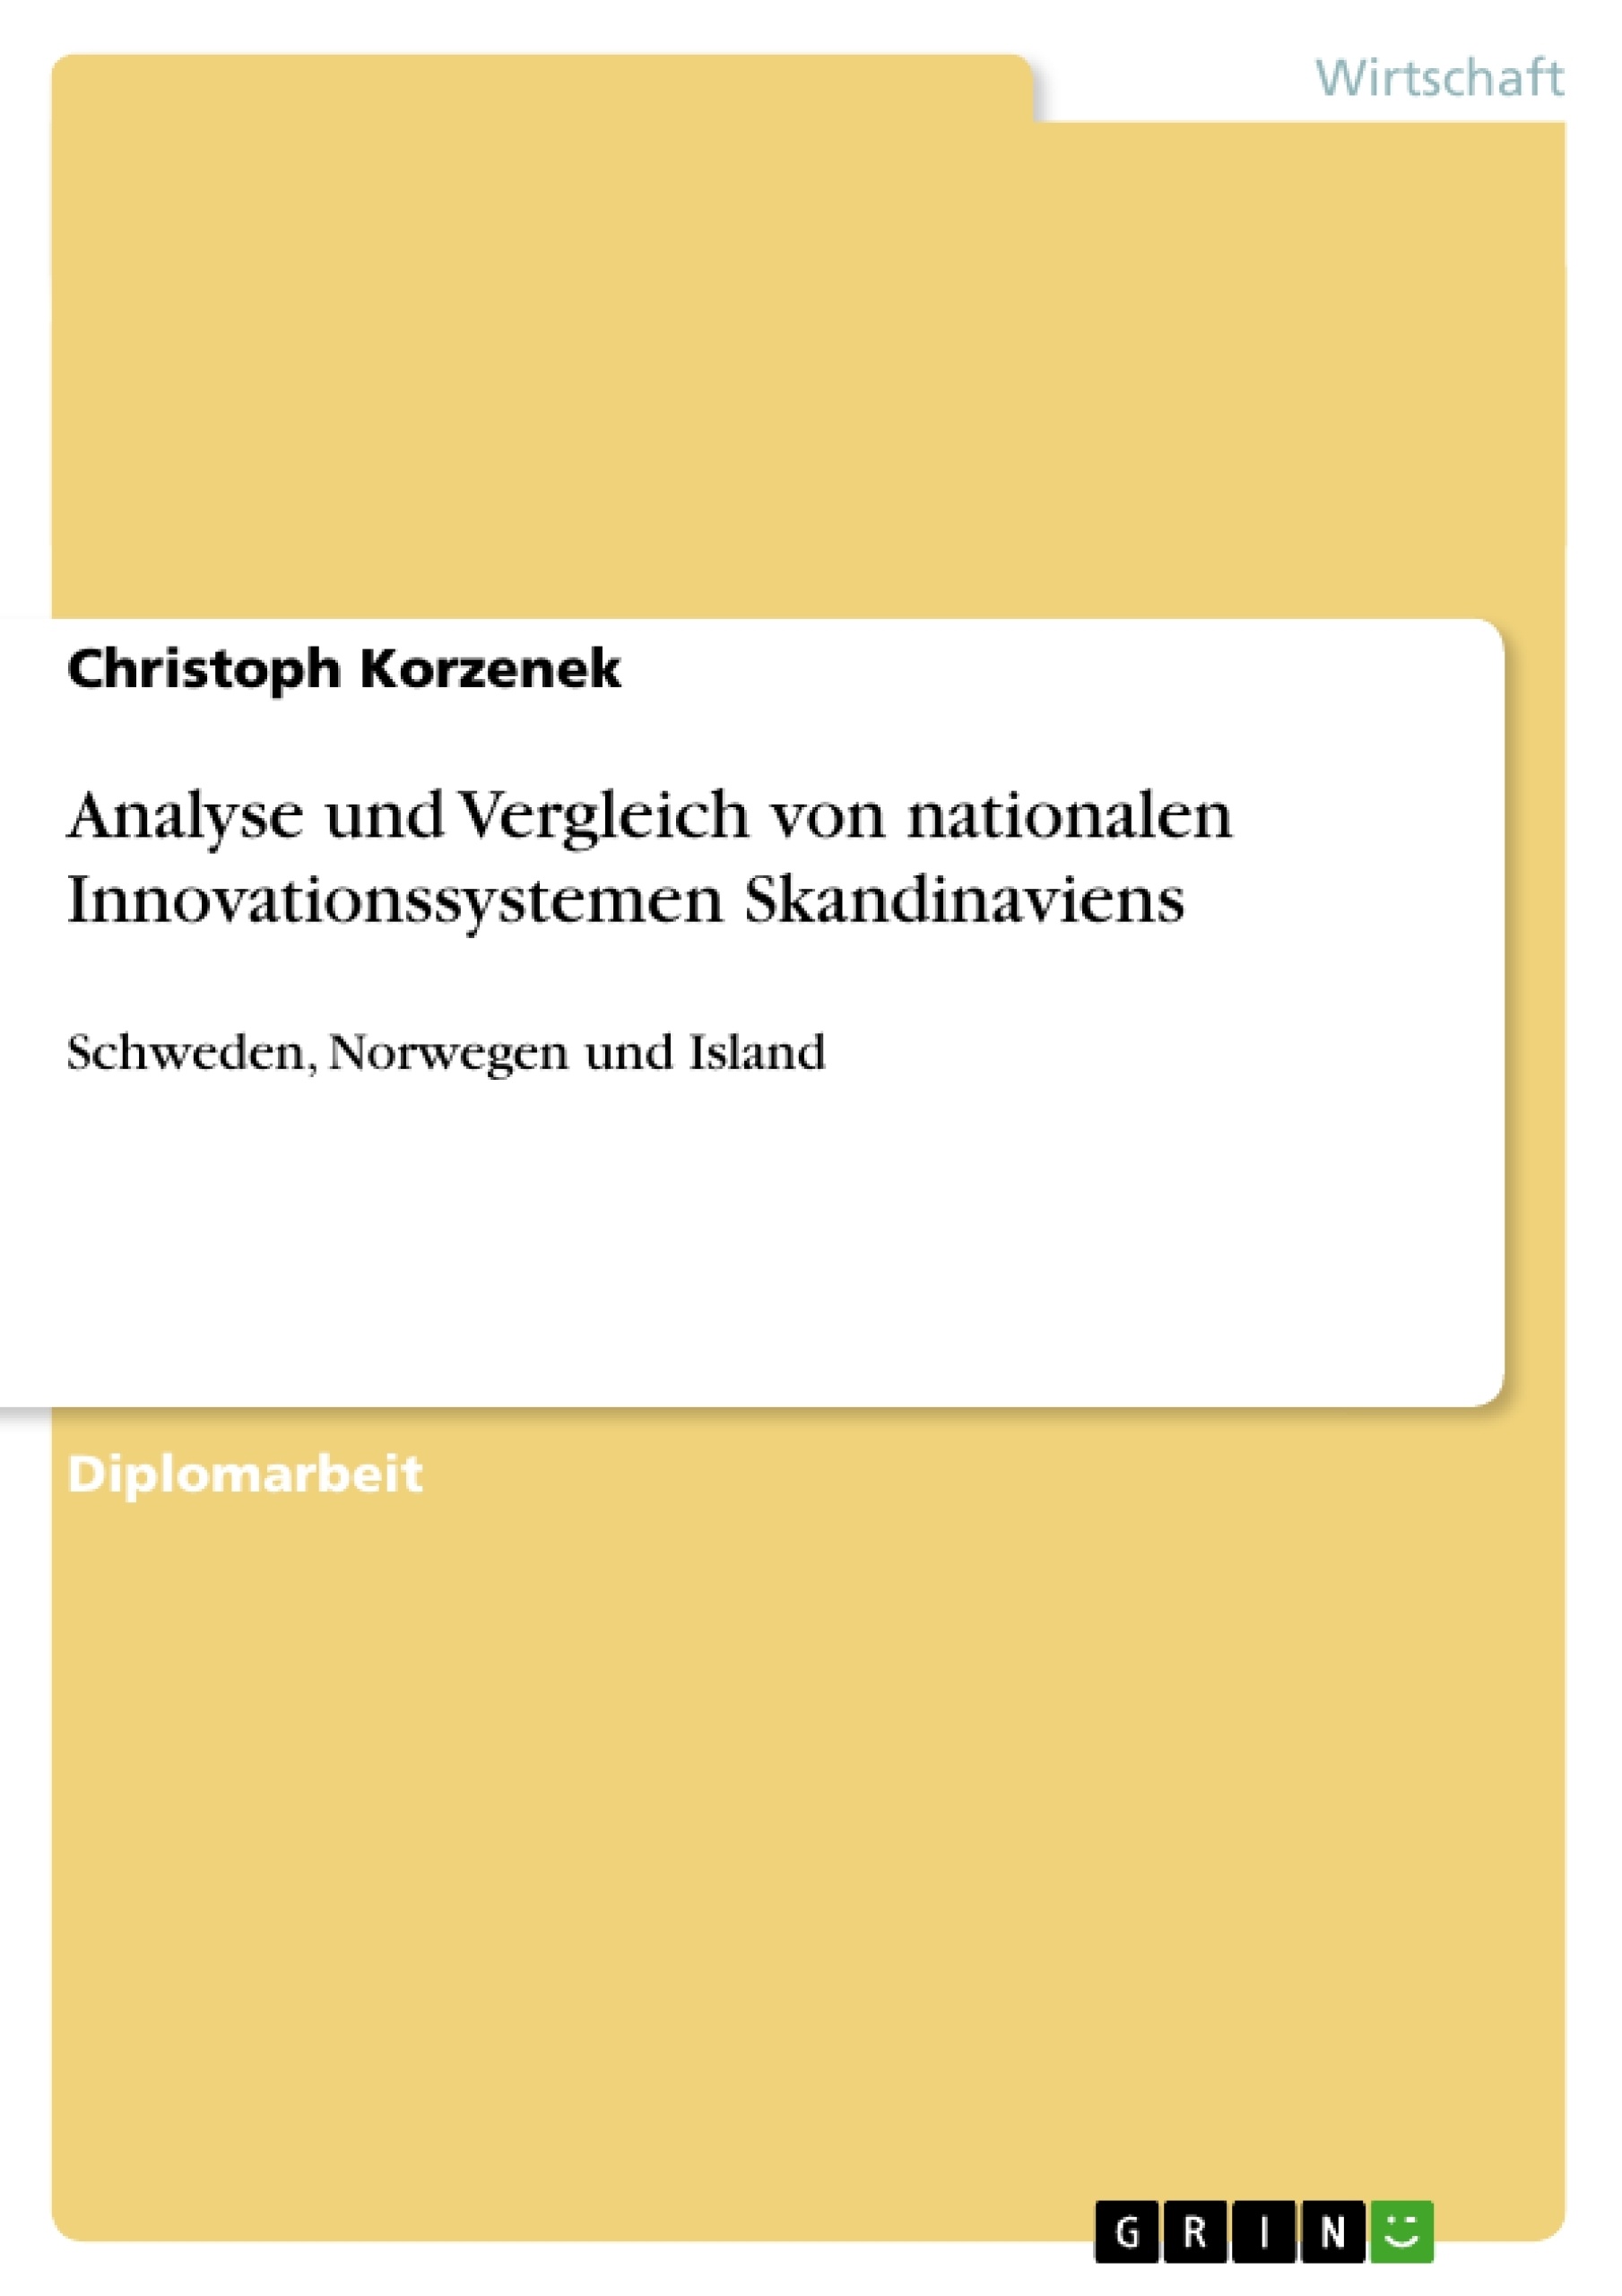 Titel: Analyse und Vergleich von nationalen Innovationssystemen Skandinaviens